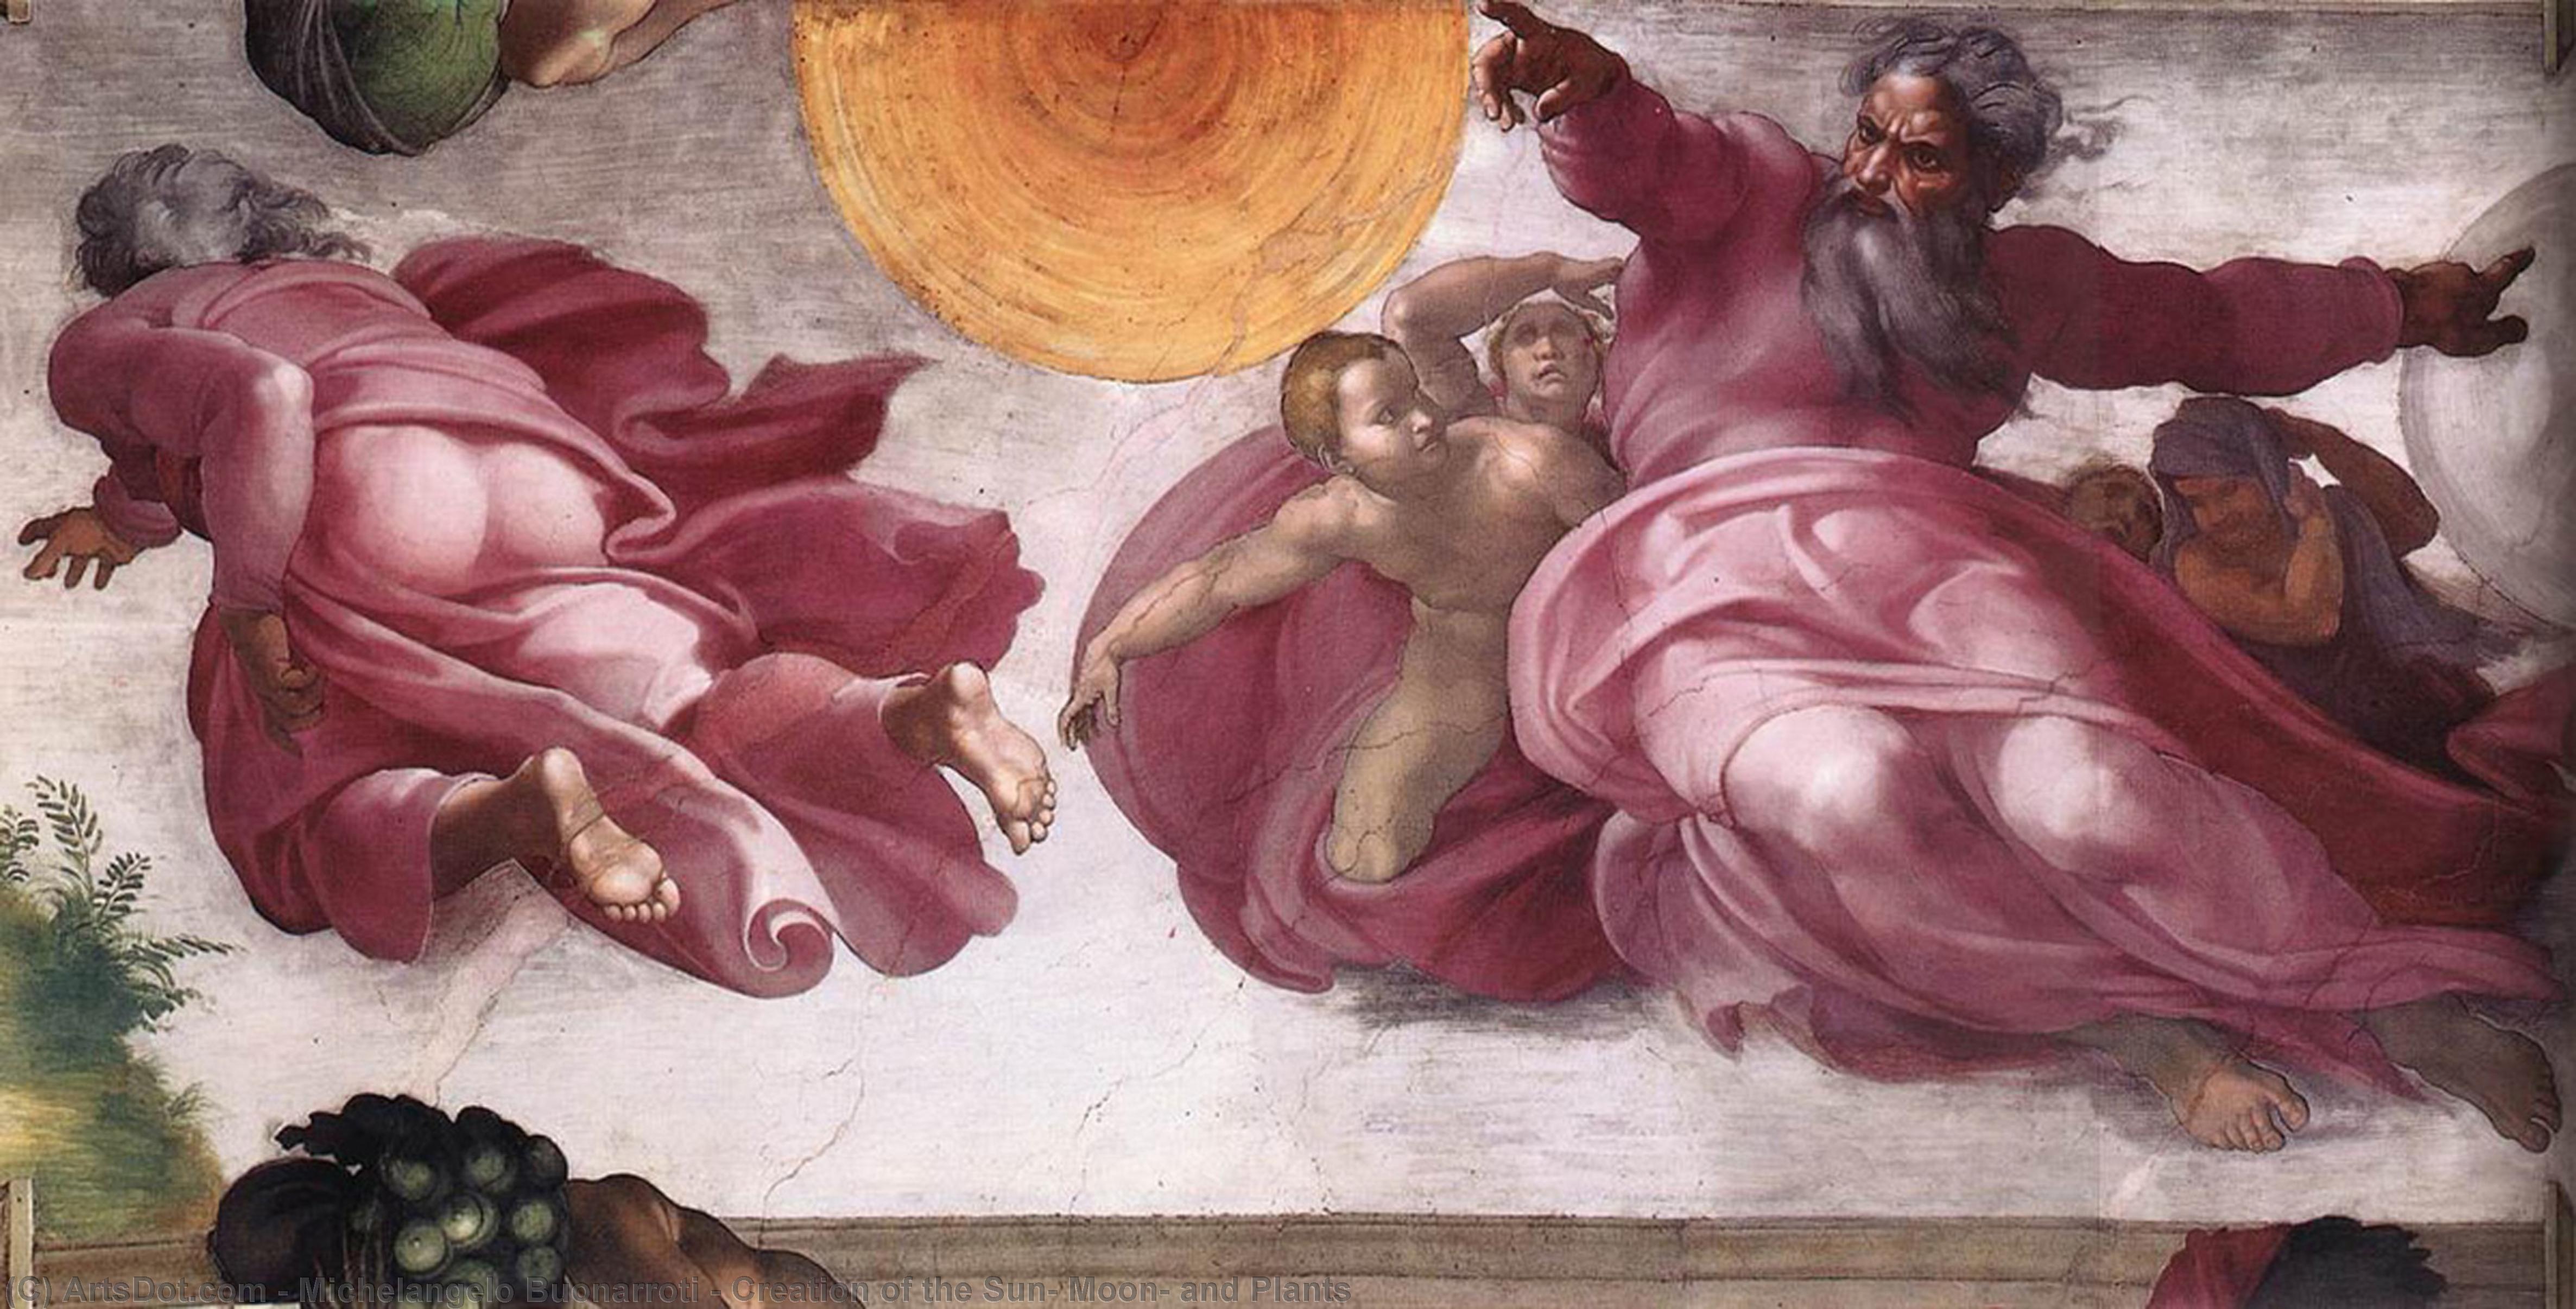 Wikioo.org - Bách khoa toàn thư về mỹ thuật - Vẽ tranh, Tác phẩm nghệ thuật Michelangelo Buonarroti - Creation of the Sun, Moon, and Plants